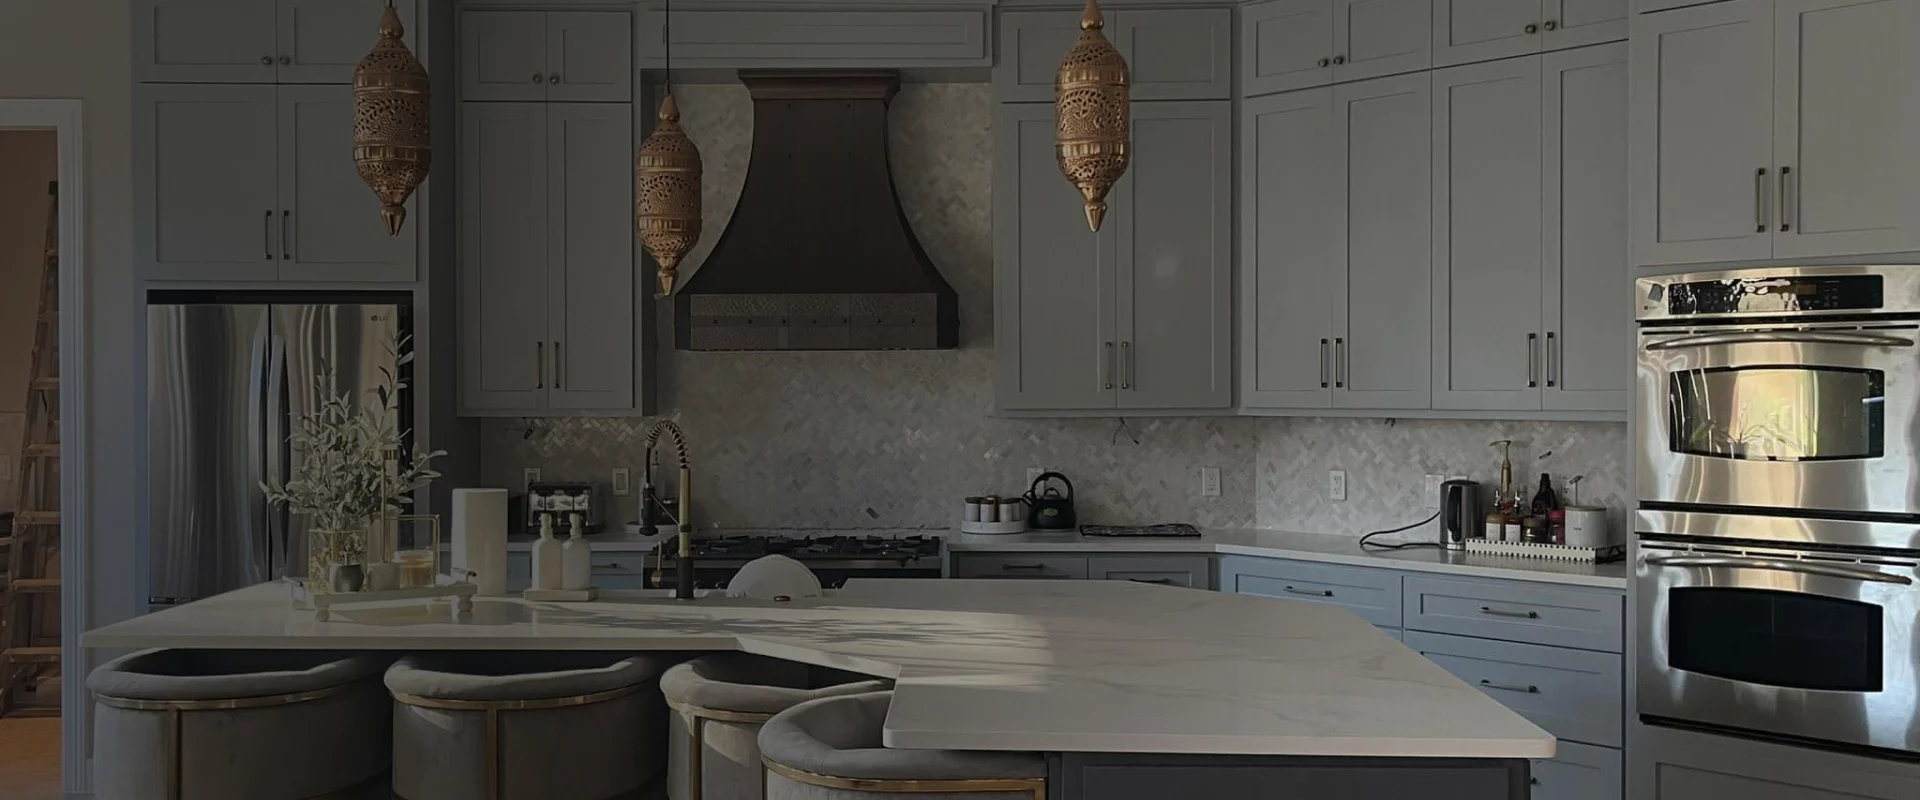 grey themed kitchen remodel houston tx